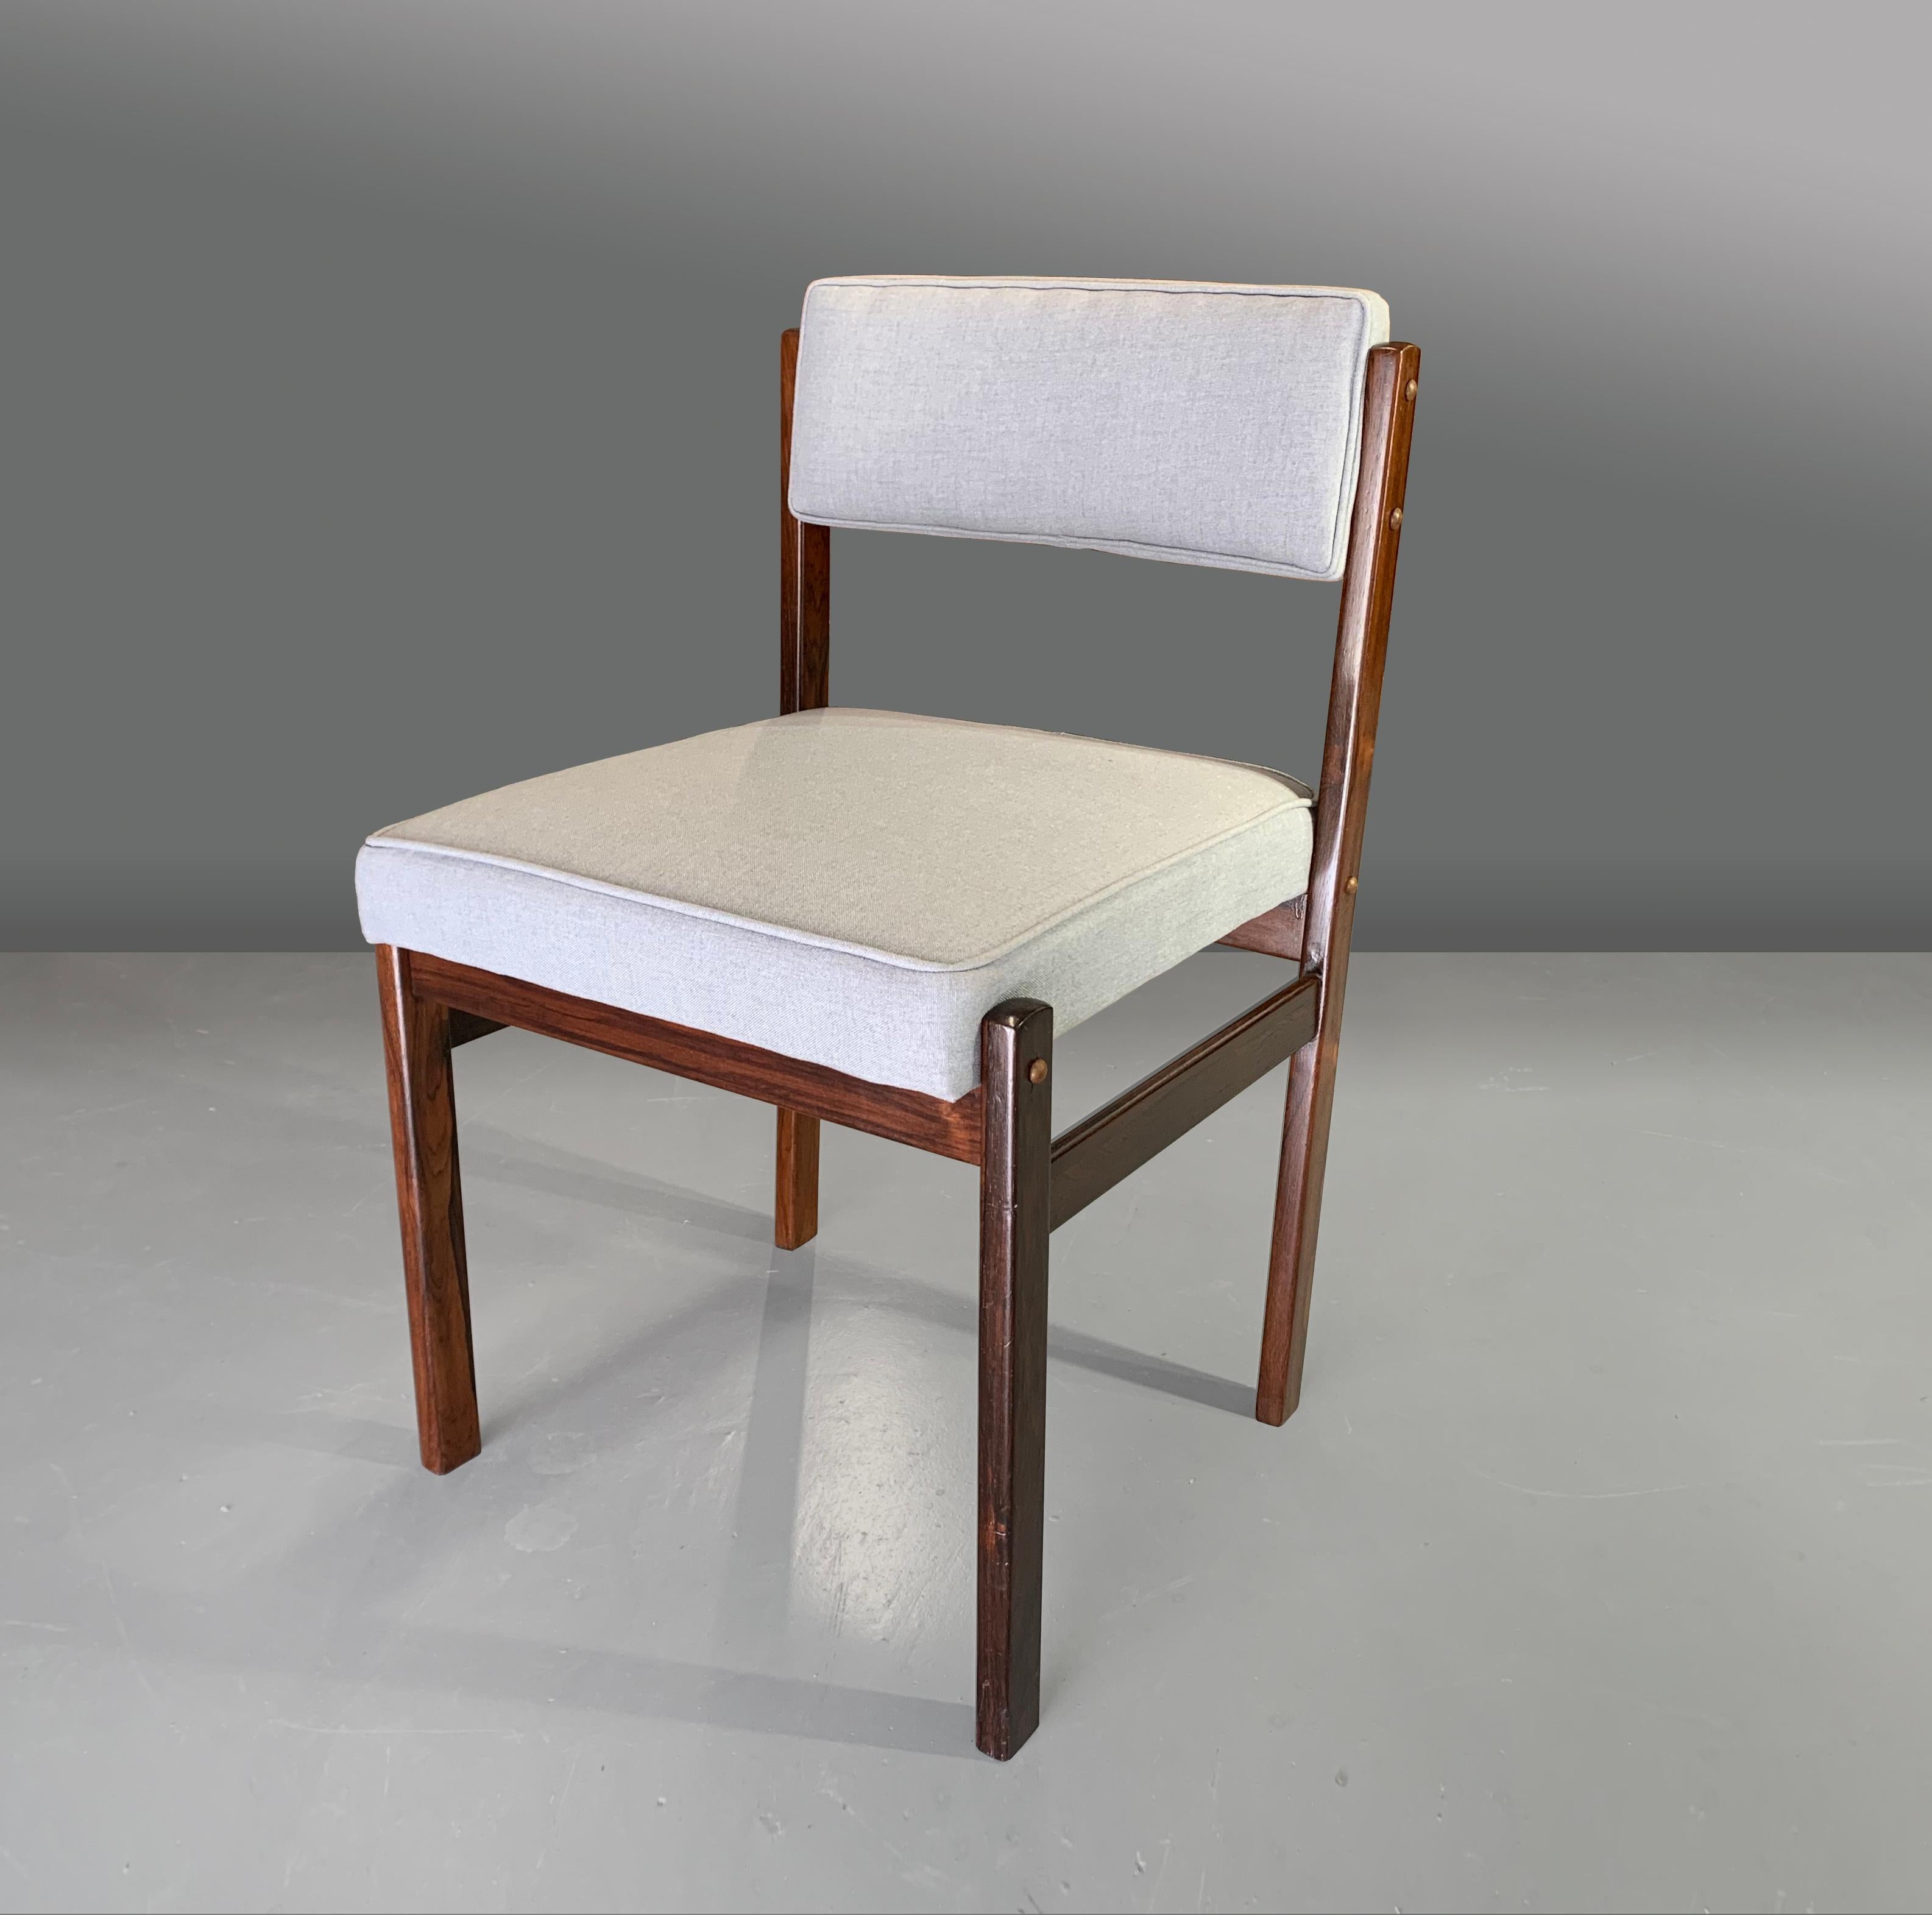 Sergio Rodrigues
Chaise de salle à manger Tião, Brésil 1959

Tião est une chaise confortable, classique et élégante, conçue par Sergio Rodrigues en 1959 et fabriquée par Oca.

Nous avons un ensemble de huit chaises Tião en bois dur massif foncé,